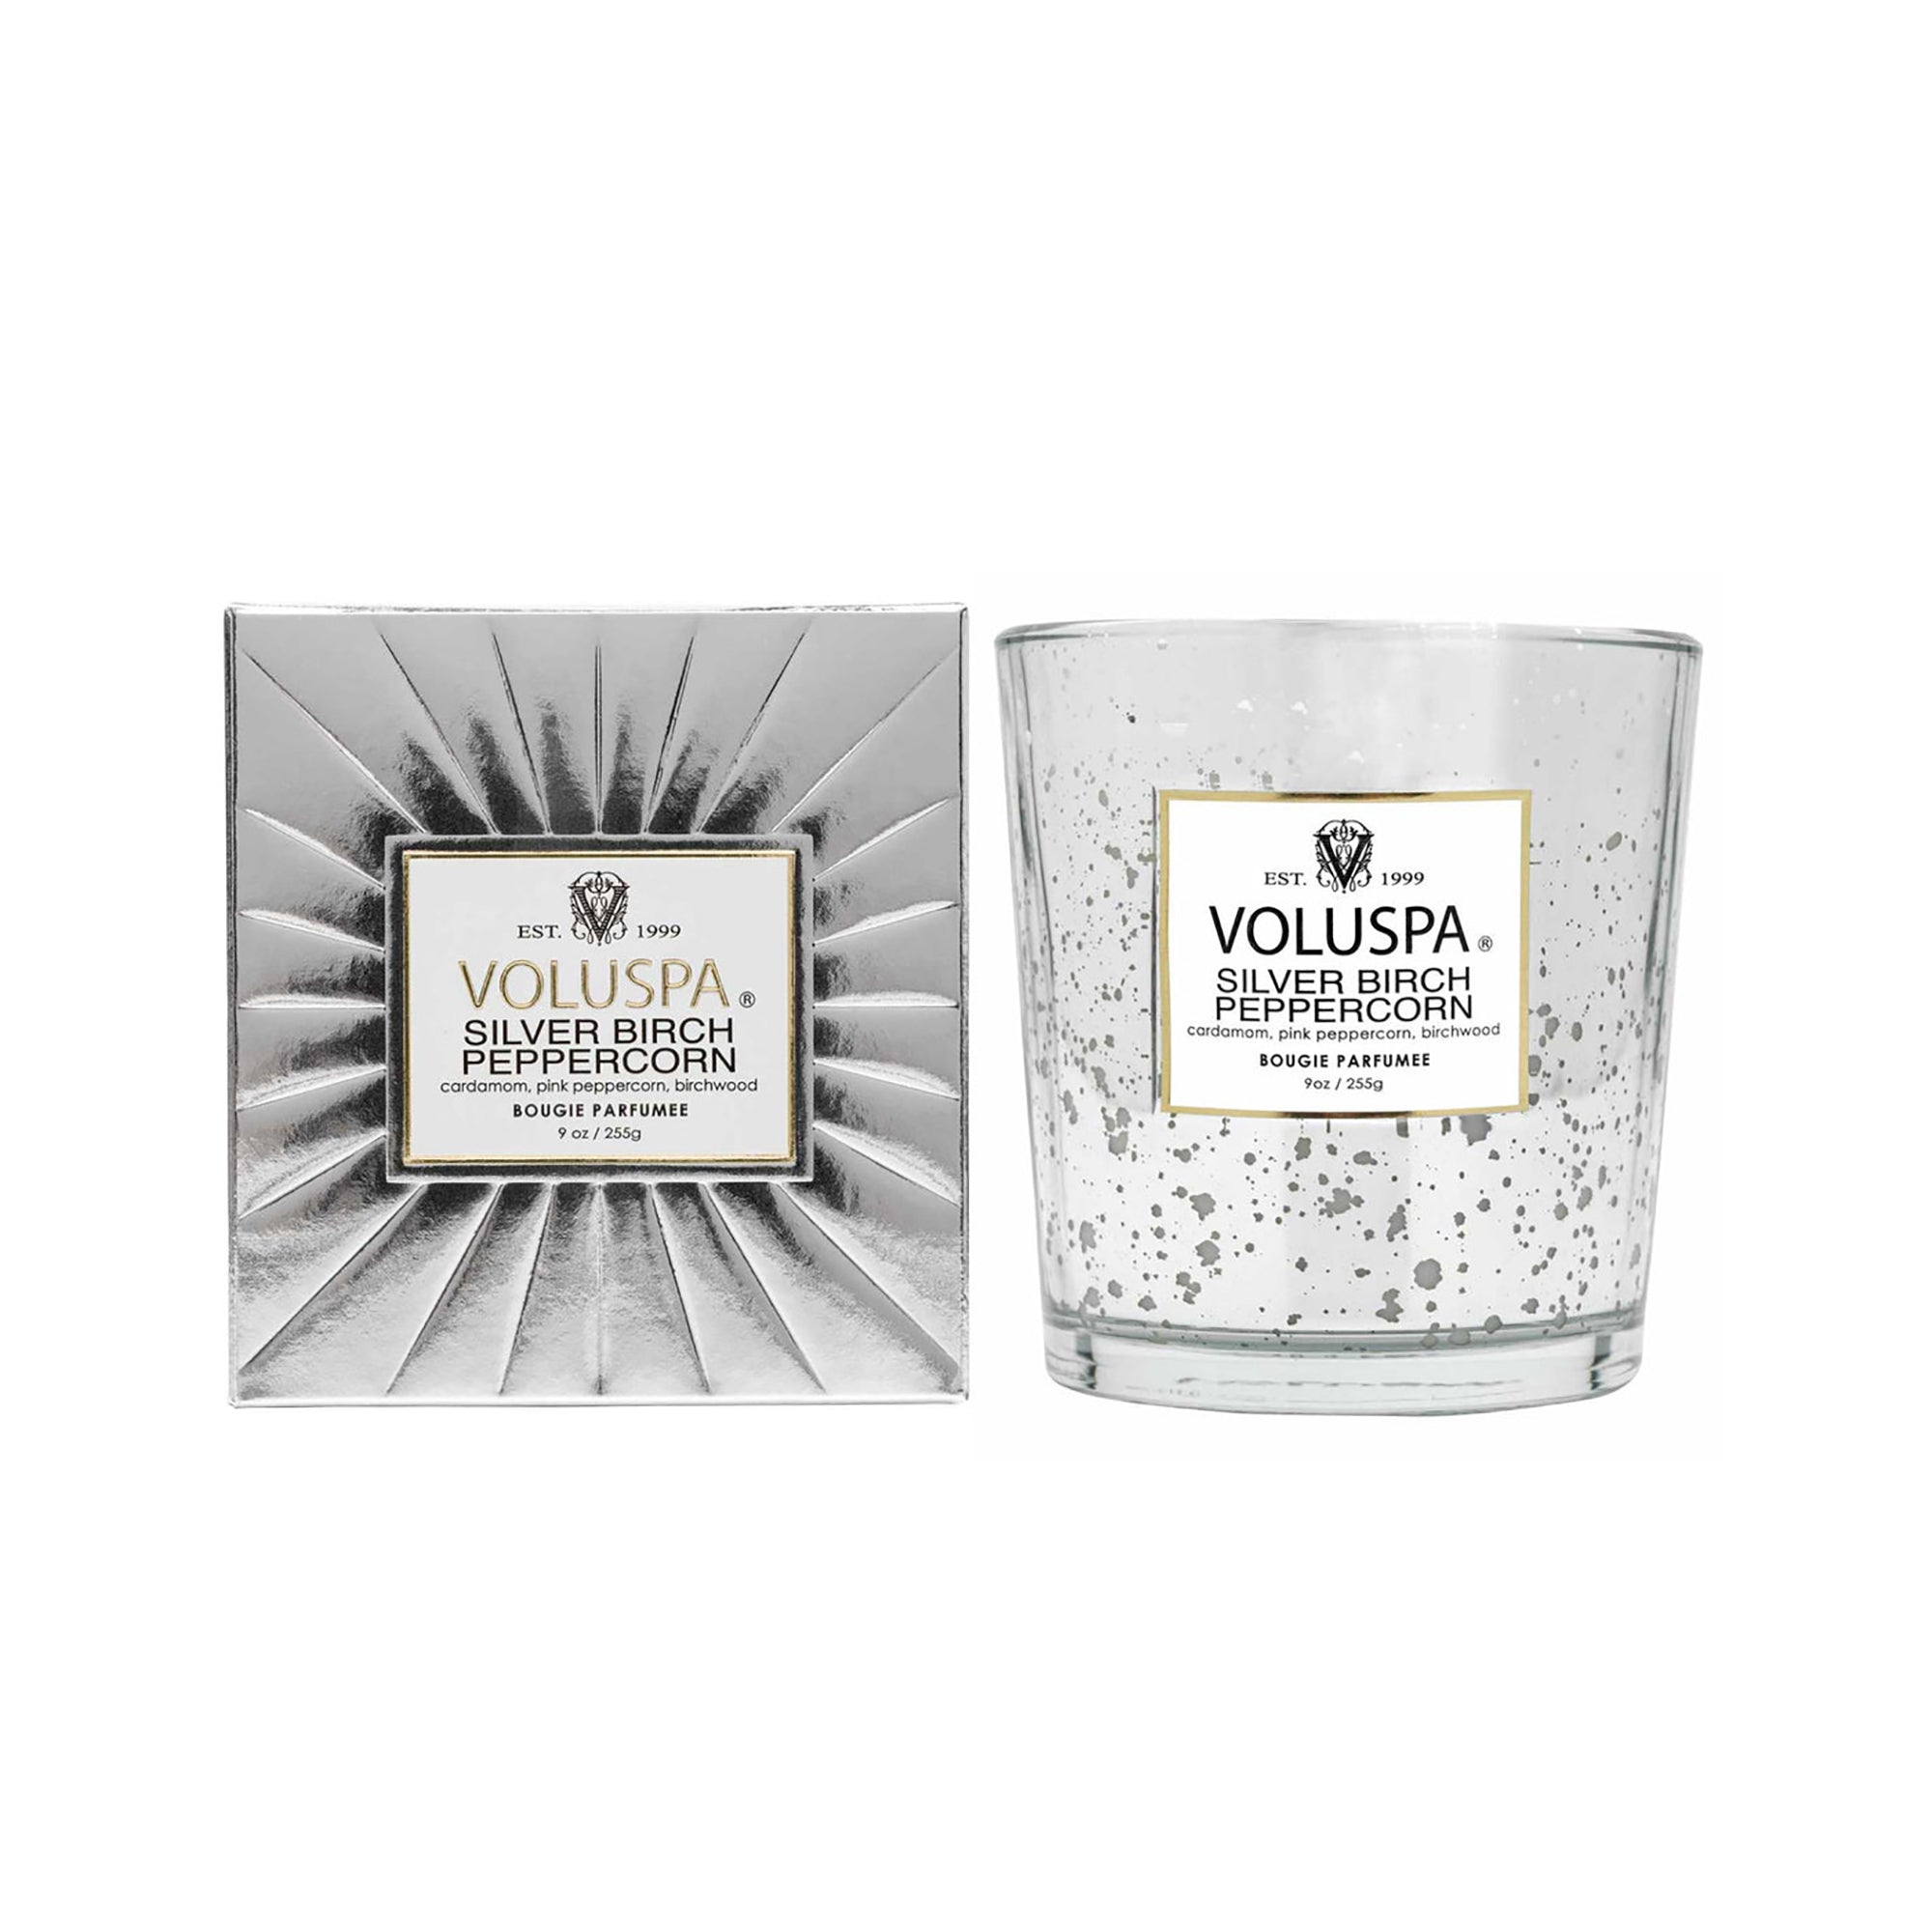 Voluspa Vermeil Classic Candle / Silver Birch Peppercorn